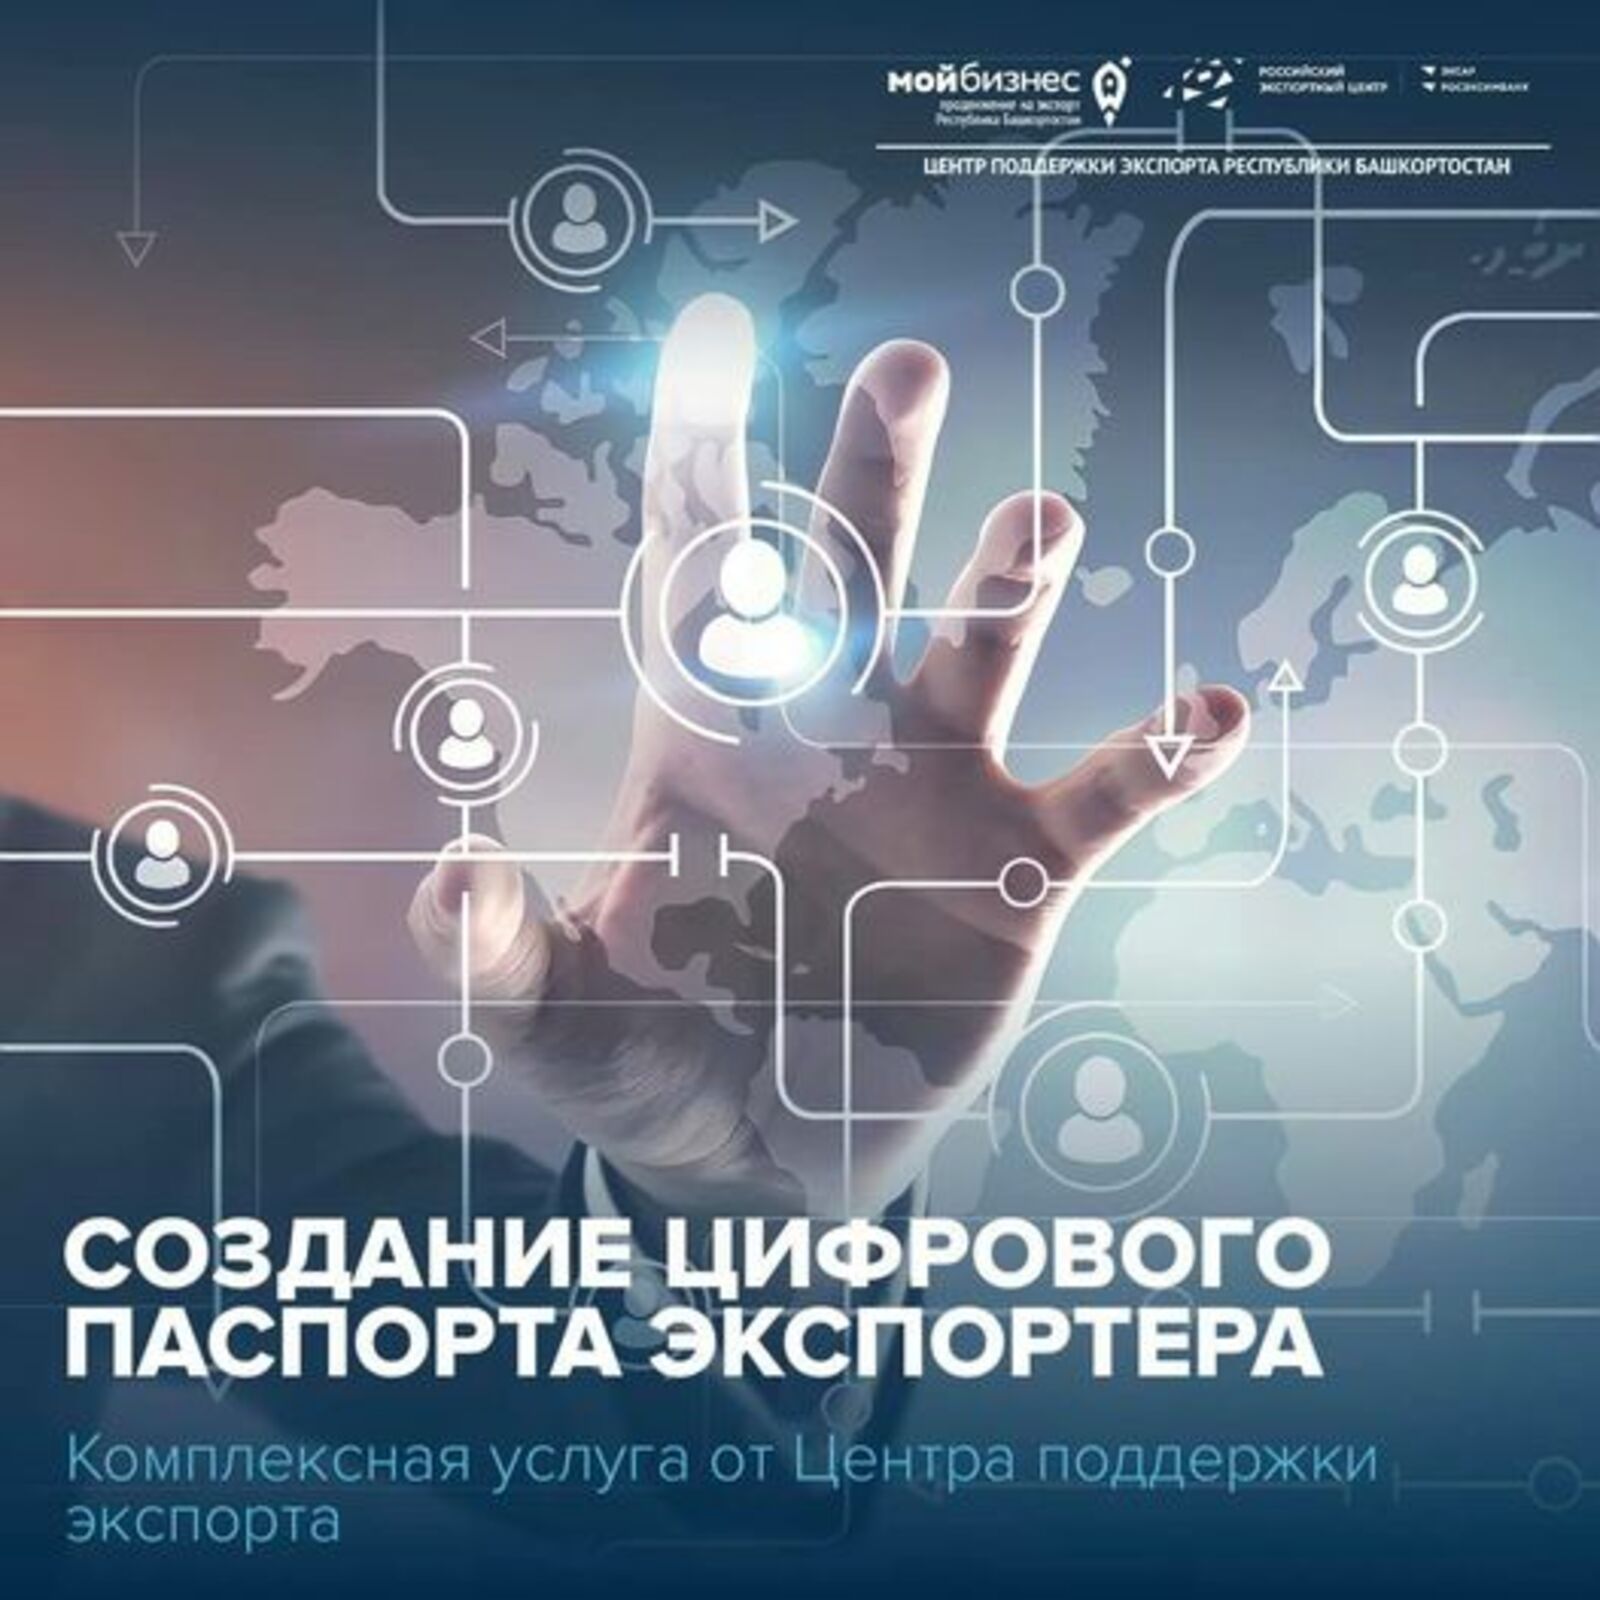 Центр поддержки экспорта Республики Башкортостан предоставляет услугу по созданию цифрового паспорта экспортера